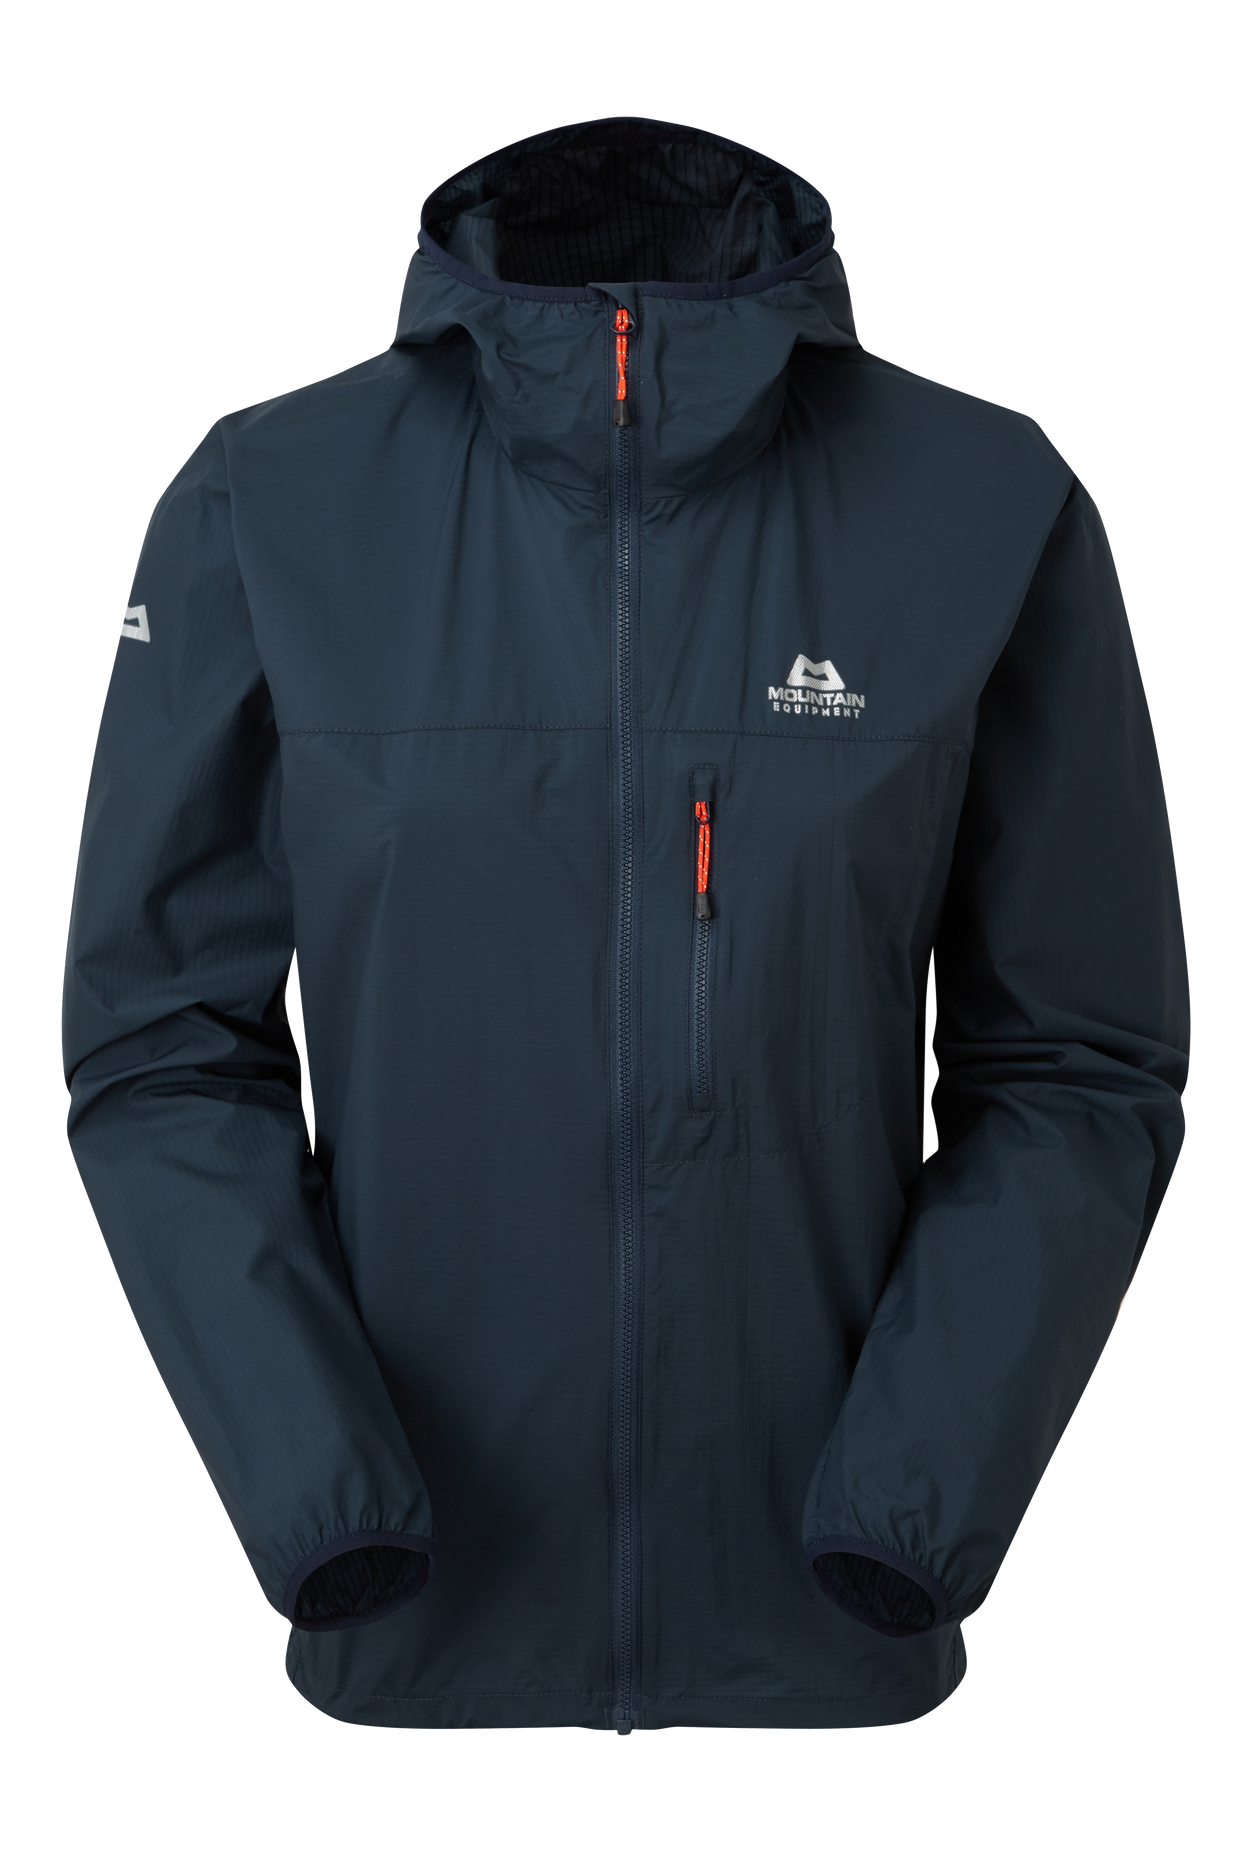 Mountain equipment dámská větruodolná bunda Aerofoil Full zip Wmns Jacket Barva: Blue Nights, Velikost: XL